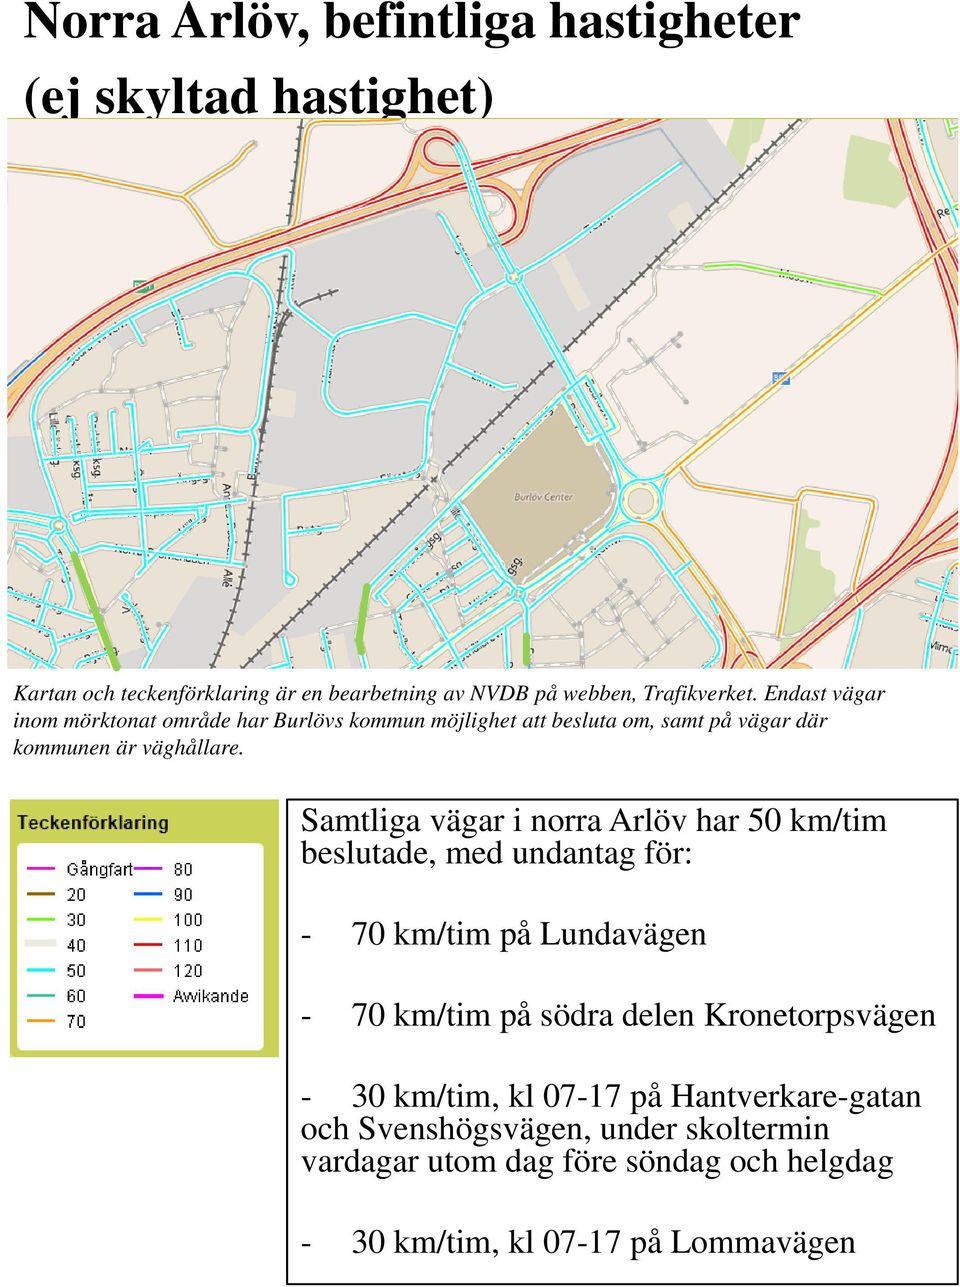 Samtliga vägar i norra Arlöv har 50 km/tim beslutade, med undantag för: - 70 km/tim på Lundavägen - 70 km/tim på södra delen